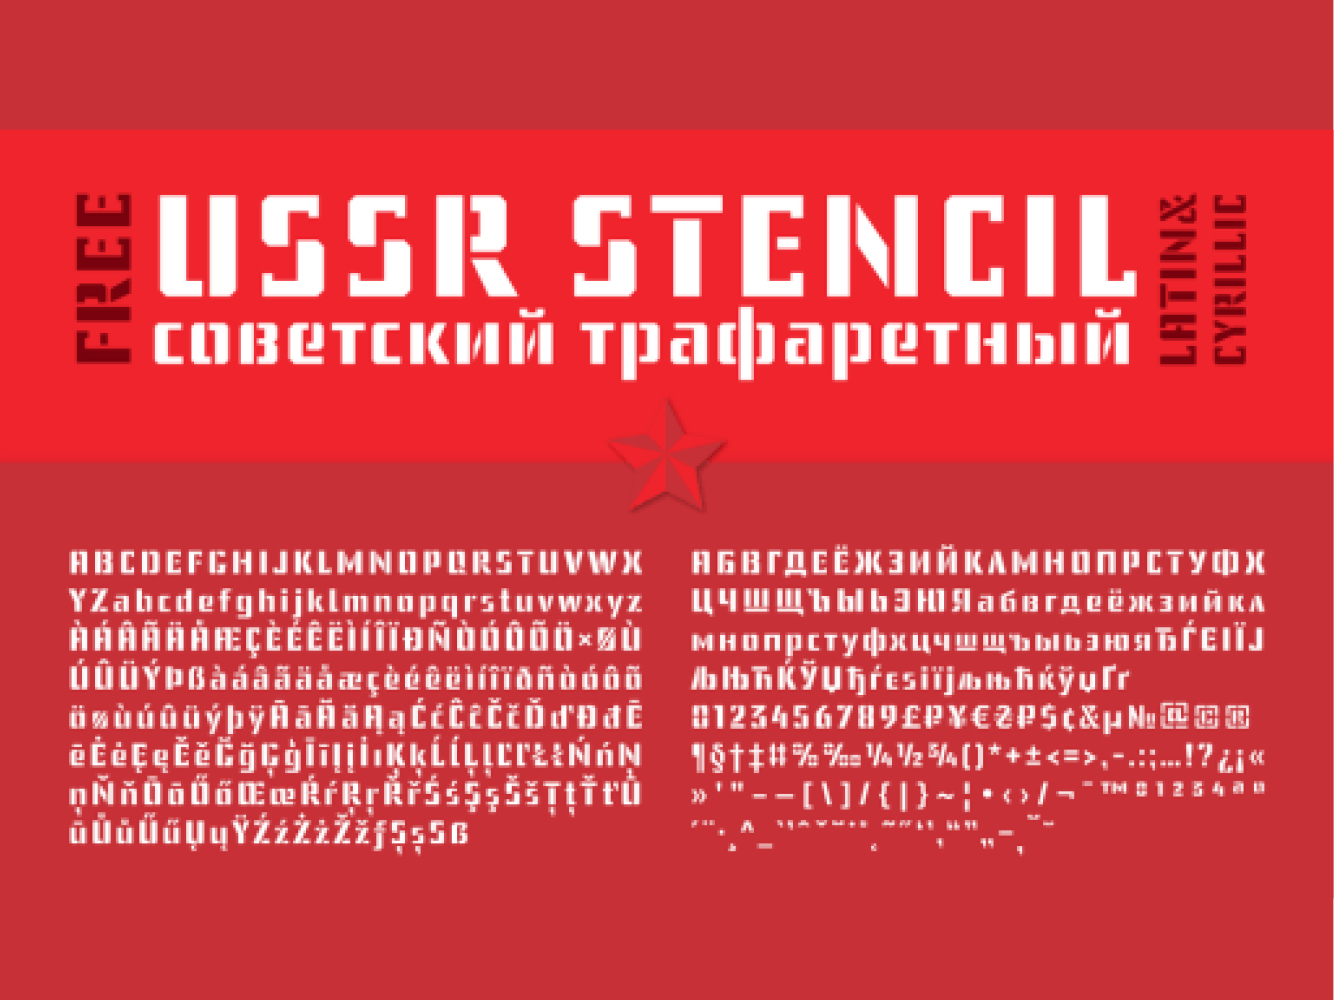 USSR Stencil